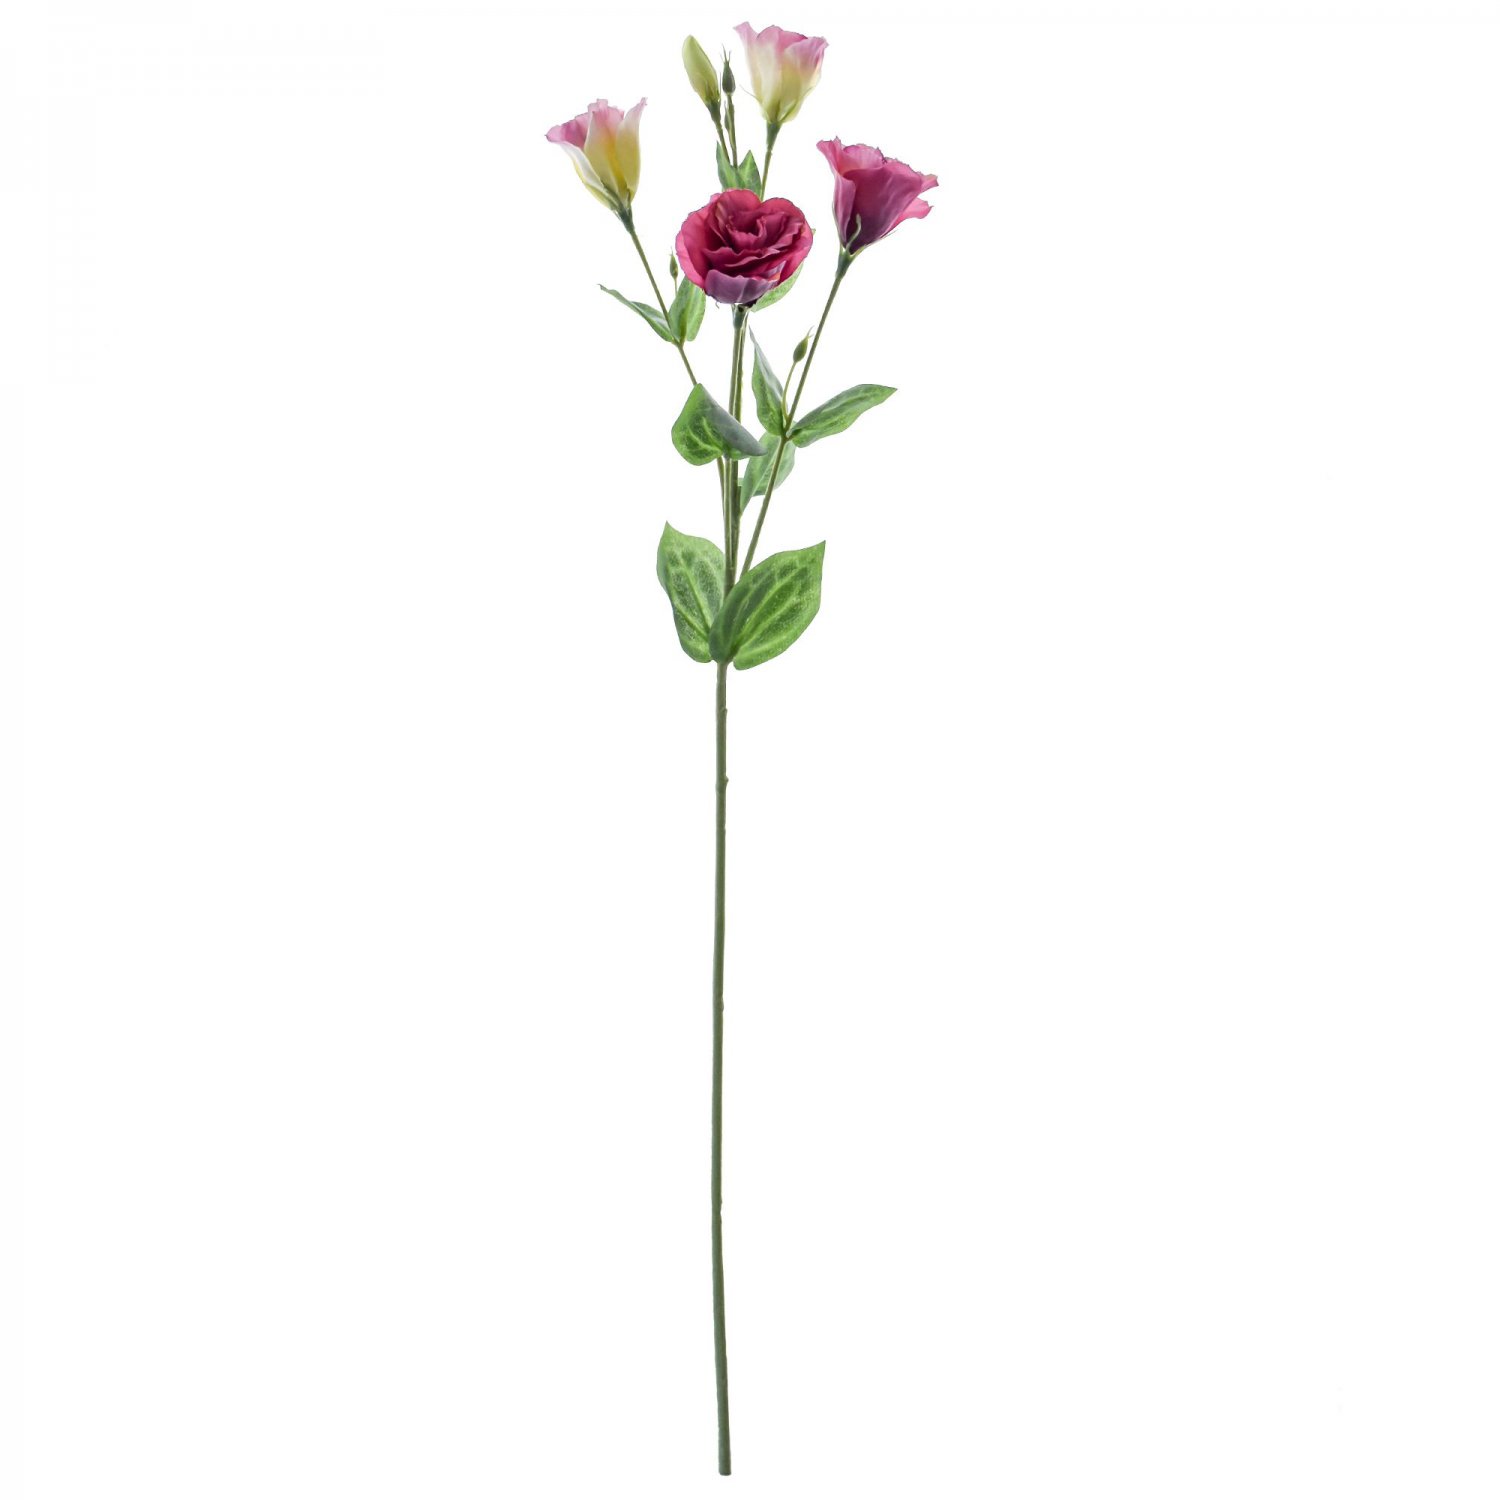 リシアンサス トルコ桔梗 モーブピンク 単品花材 造花 アーティフィシャルフラワー 